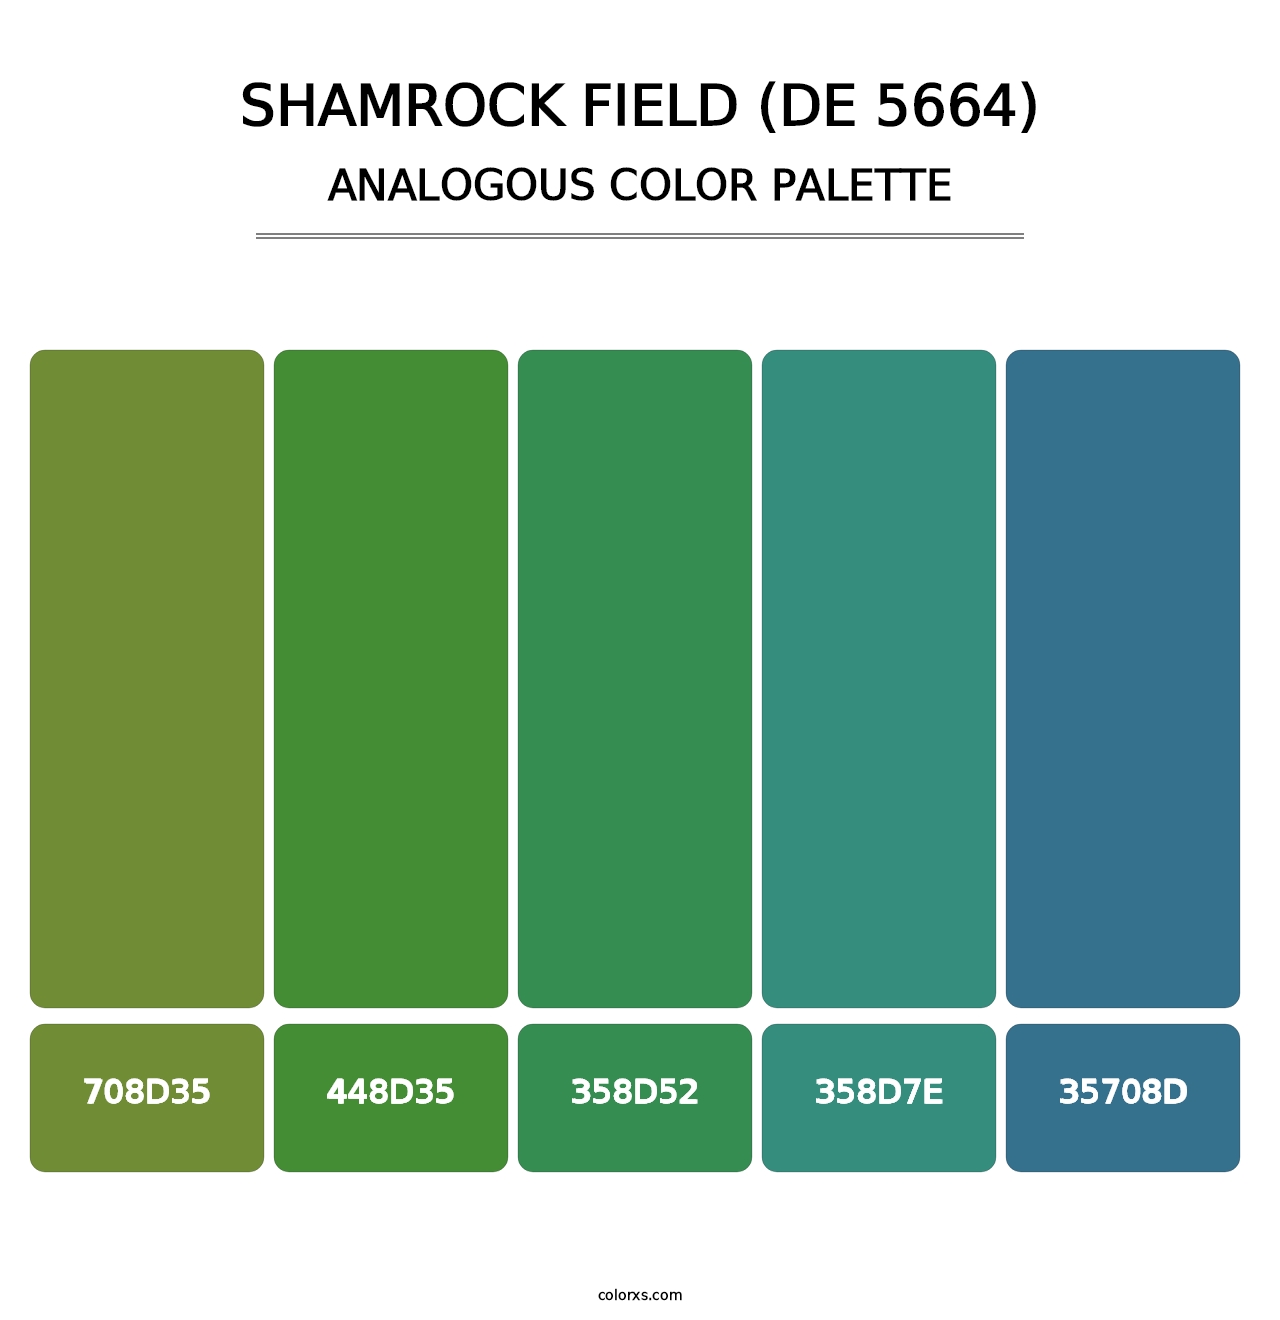 Shamrock Field (DE 5664) - Analogous Color Palette